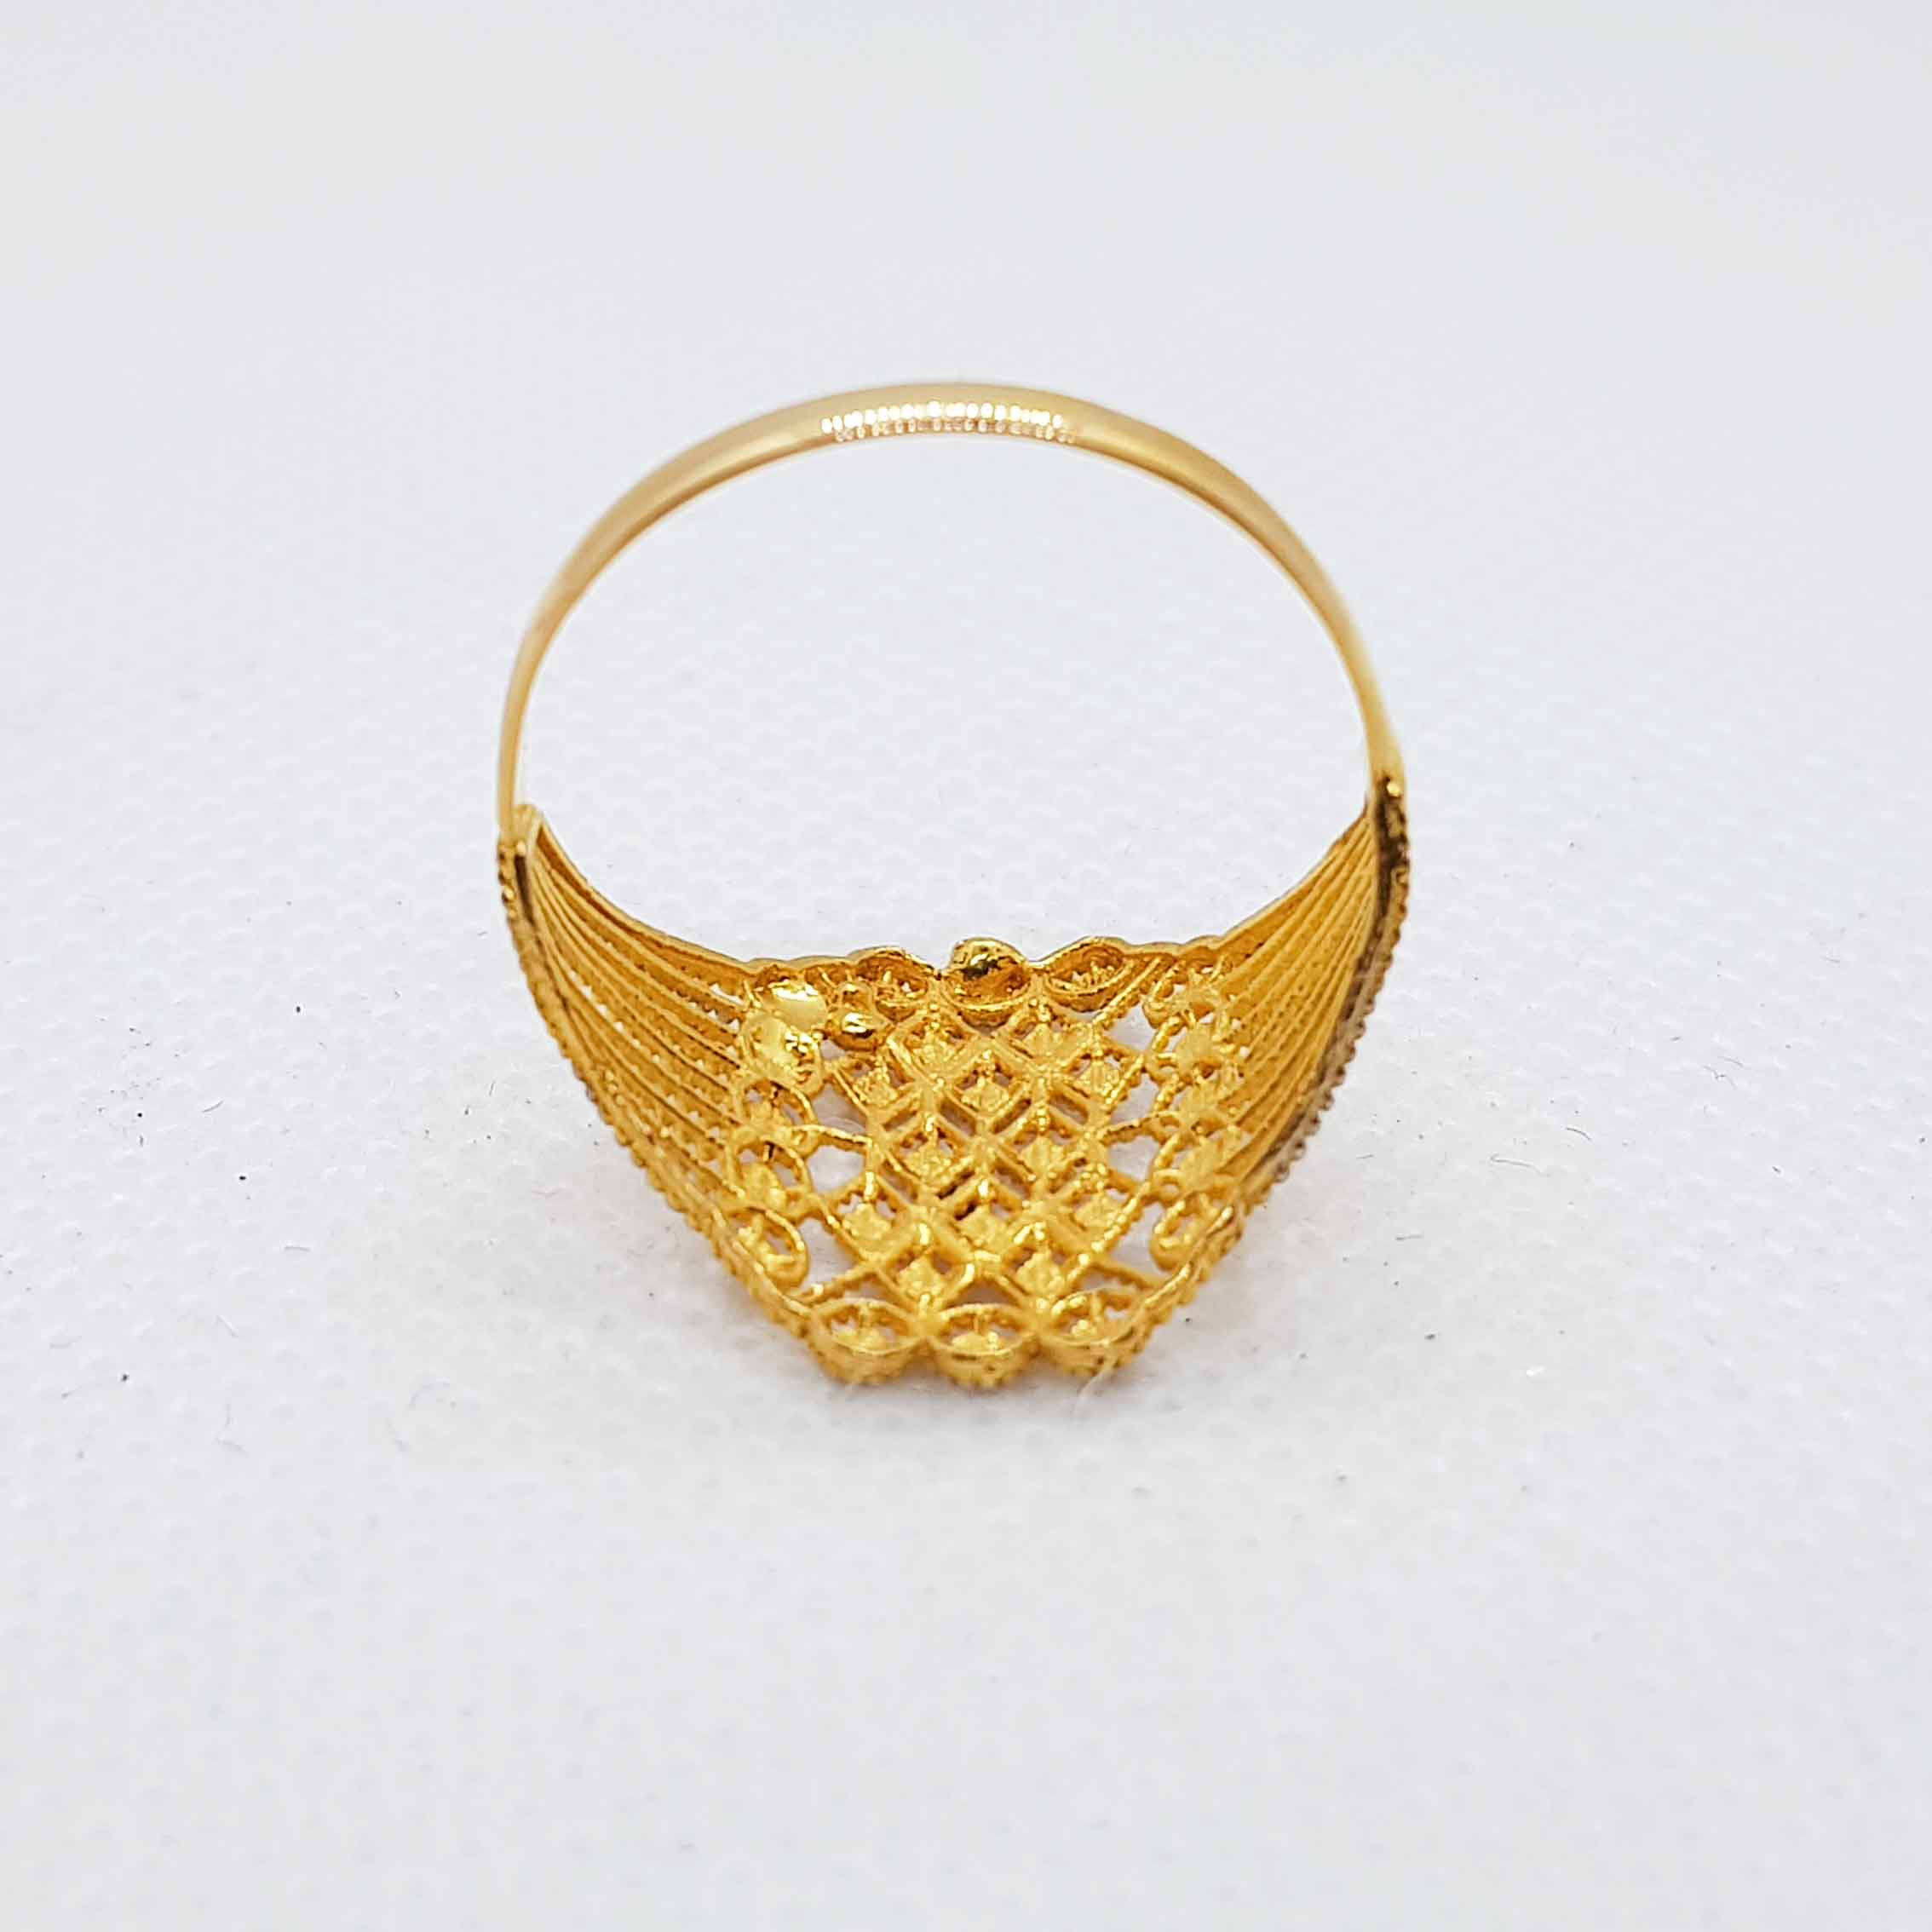 Stylish Gold Ring Without Stone